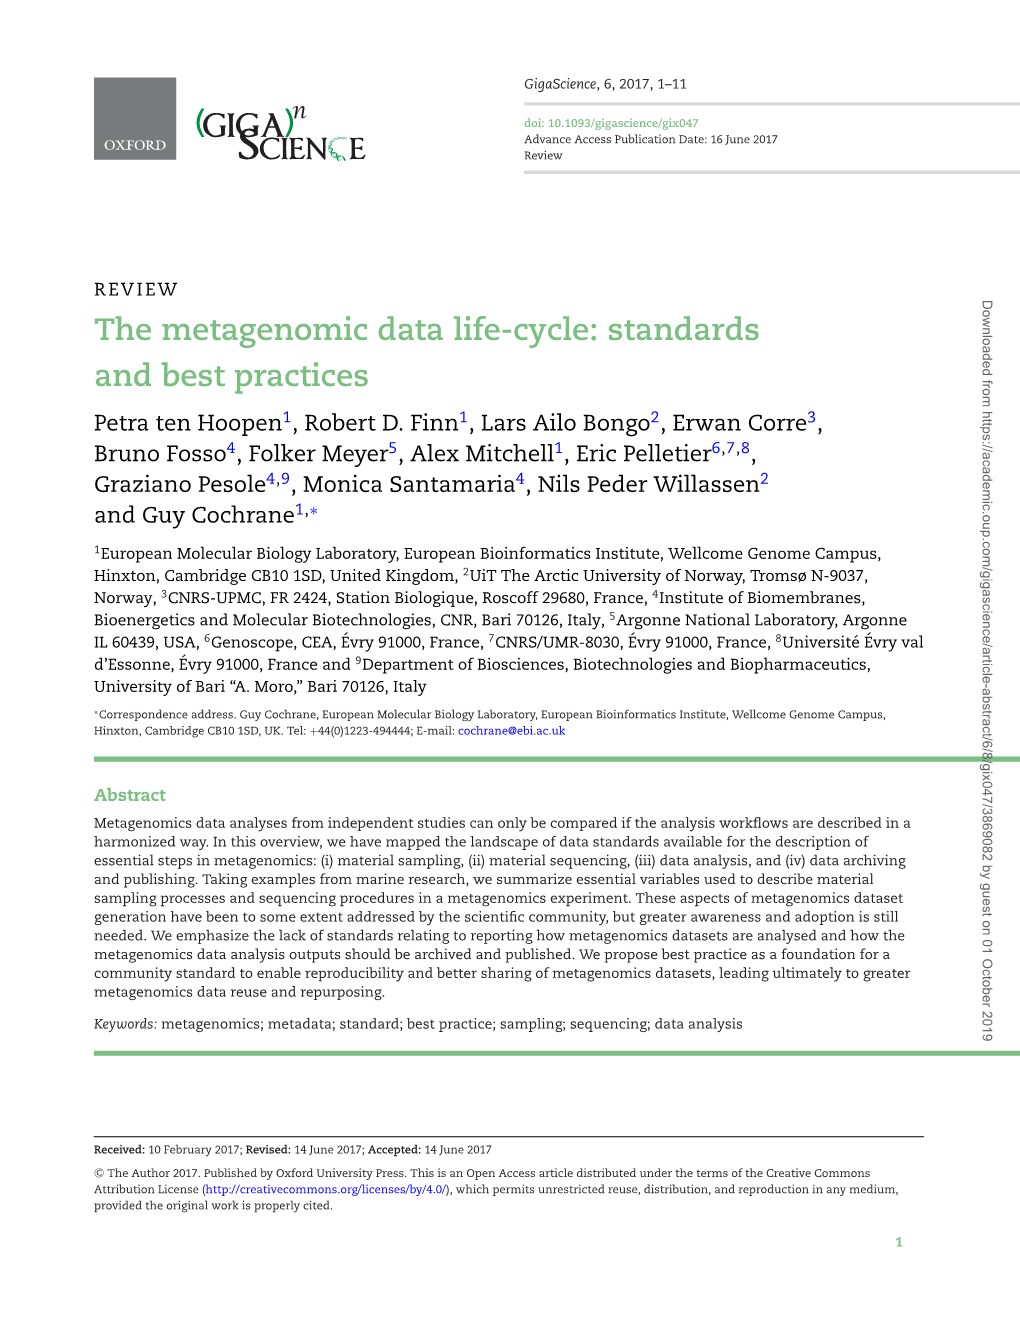 The Metagenomic Data Life-Cycle: Standards and Best Practices Petra Ten Hoopen1, Robert D